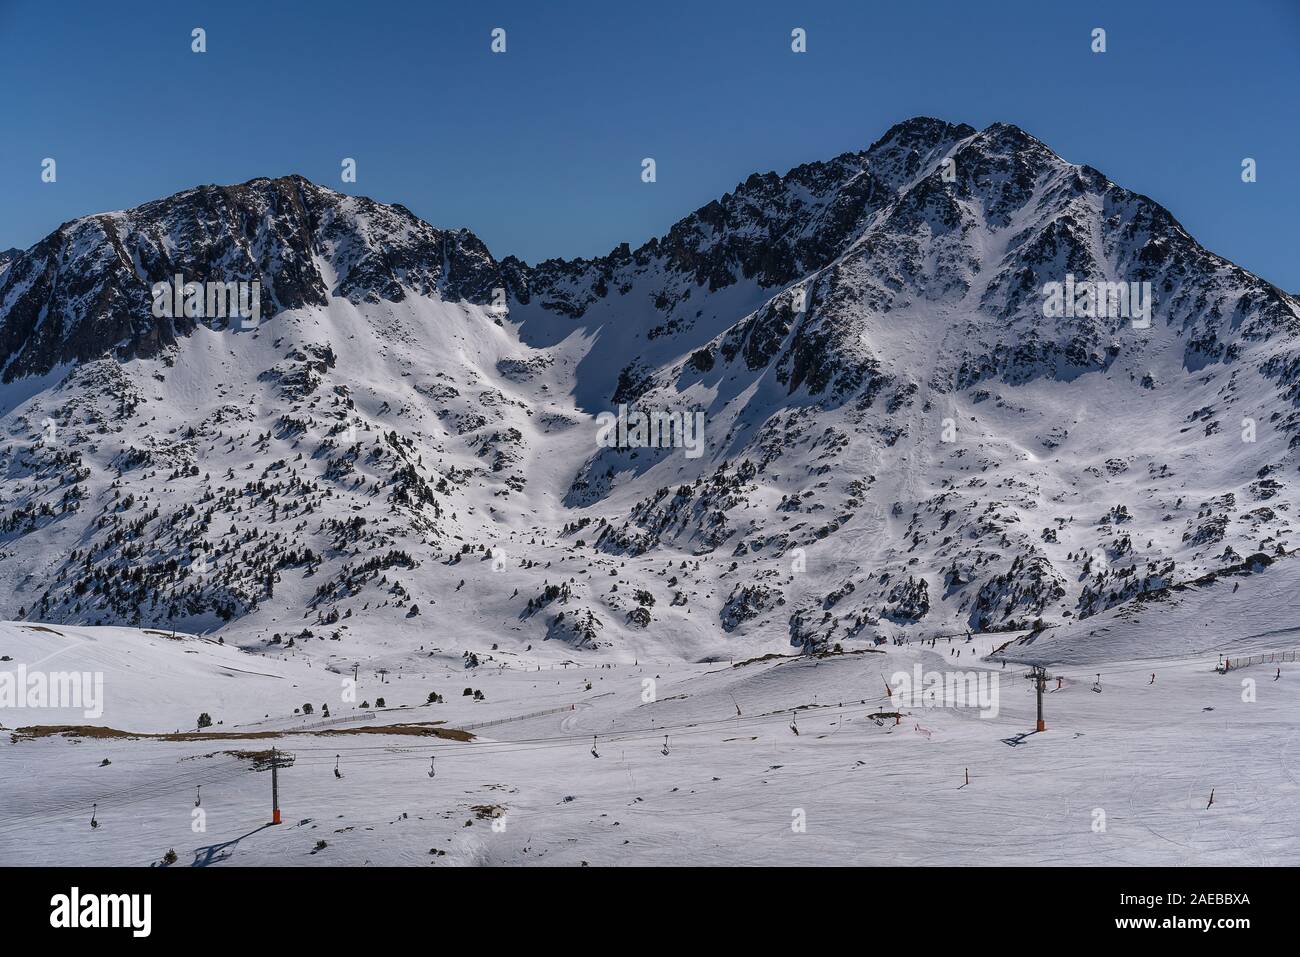 Paesaggio di montagna in Grau Roig settore di Grandvalira, Andorra Foto Stock